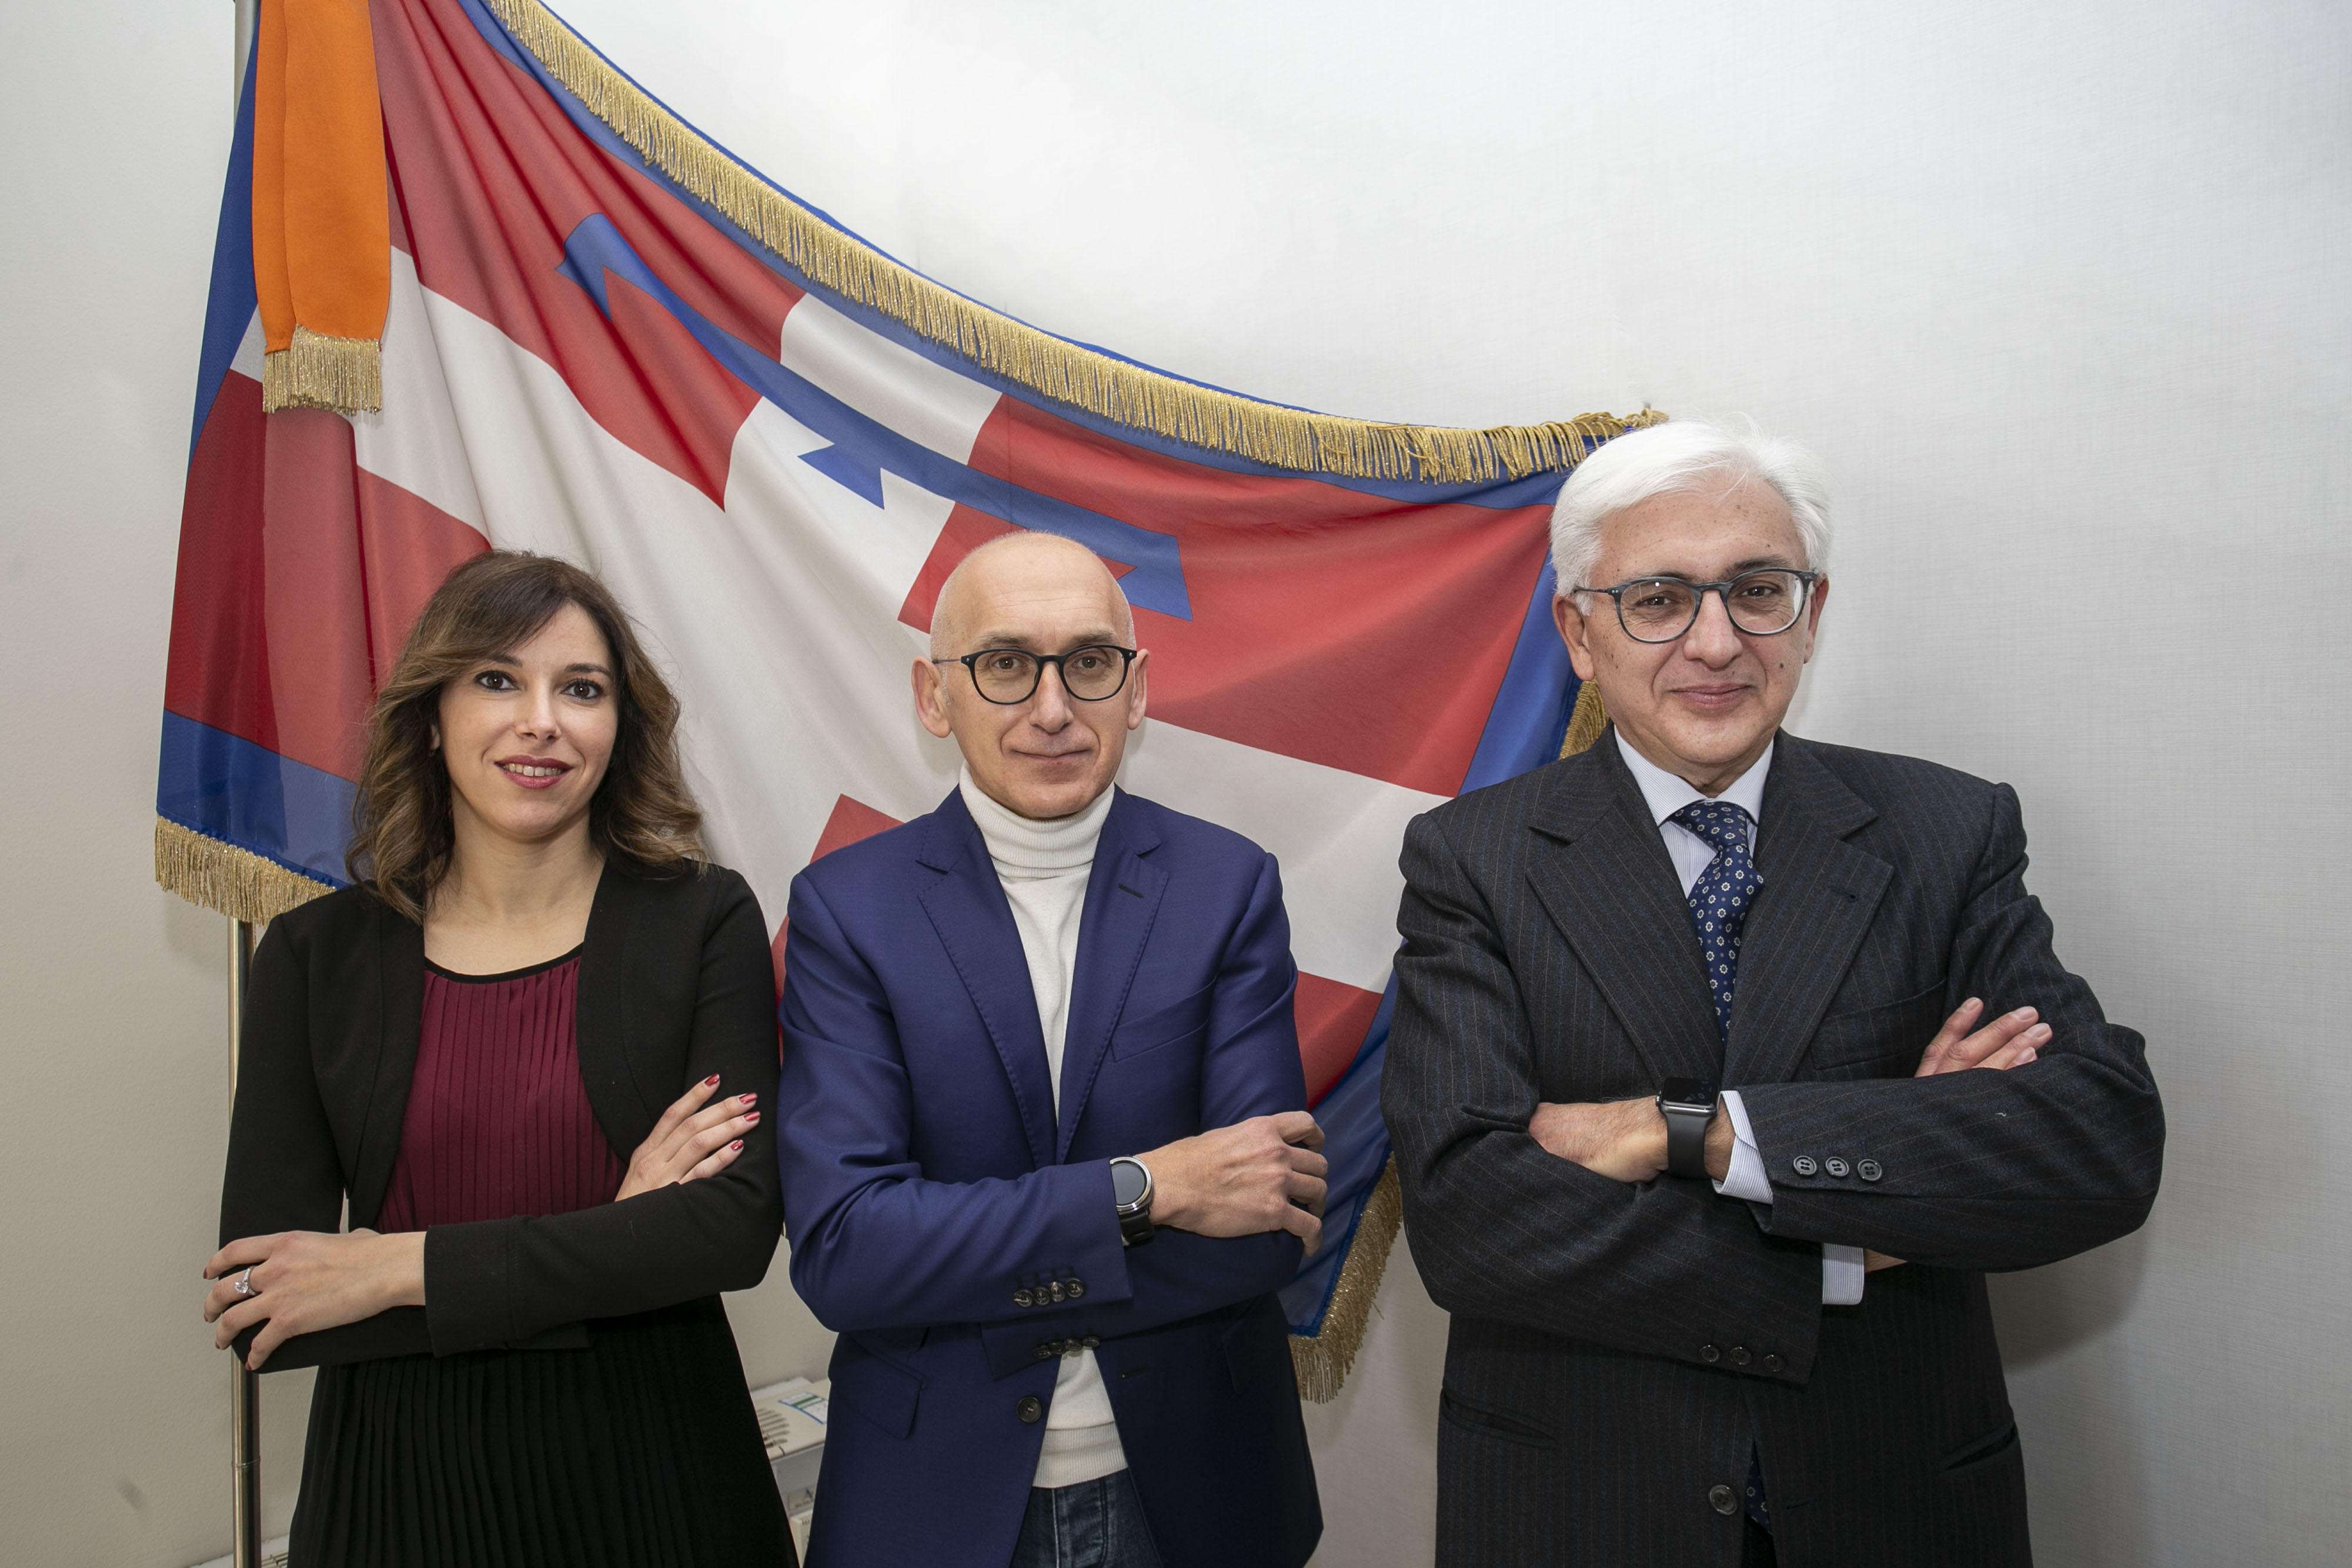 Al centro il Presidente Vincenzo Lilli, alla sua sinistra il Commissario Marco Briamonte e alla sua destra la Vicepresidente Alessia Caserio